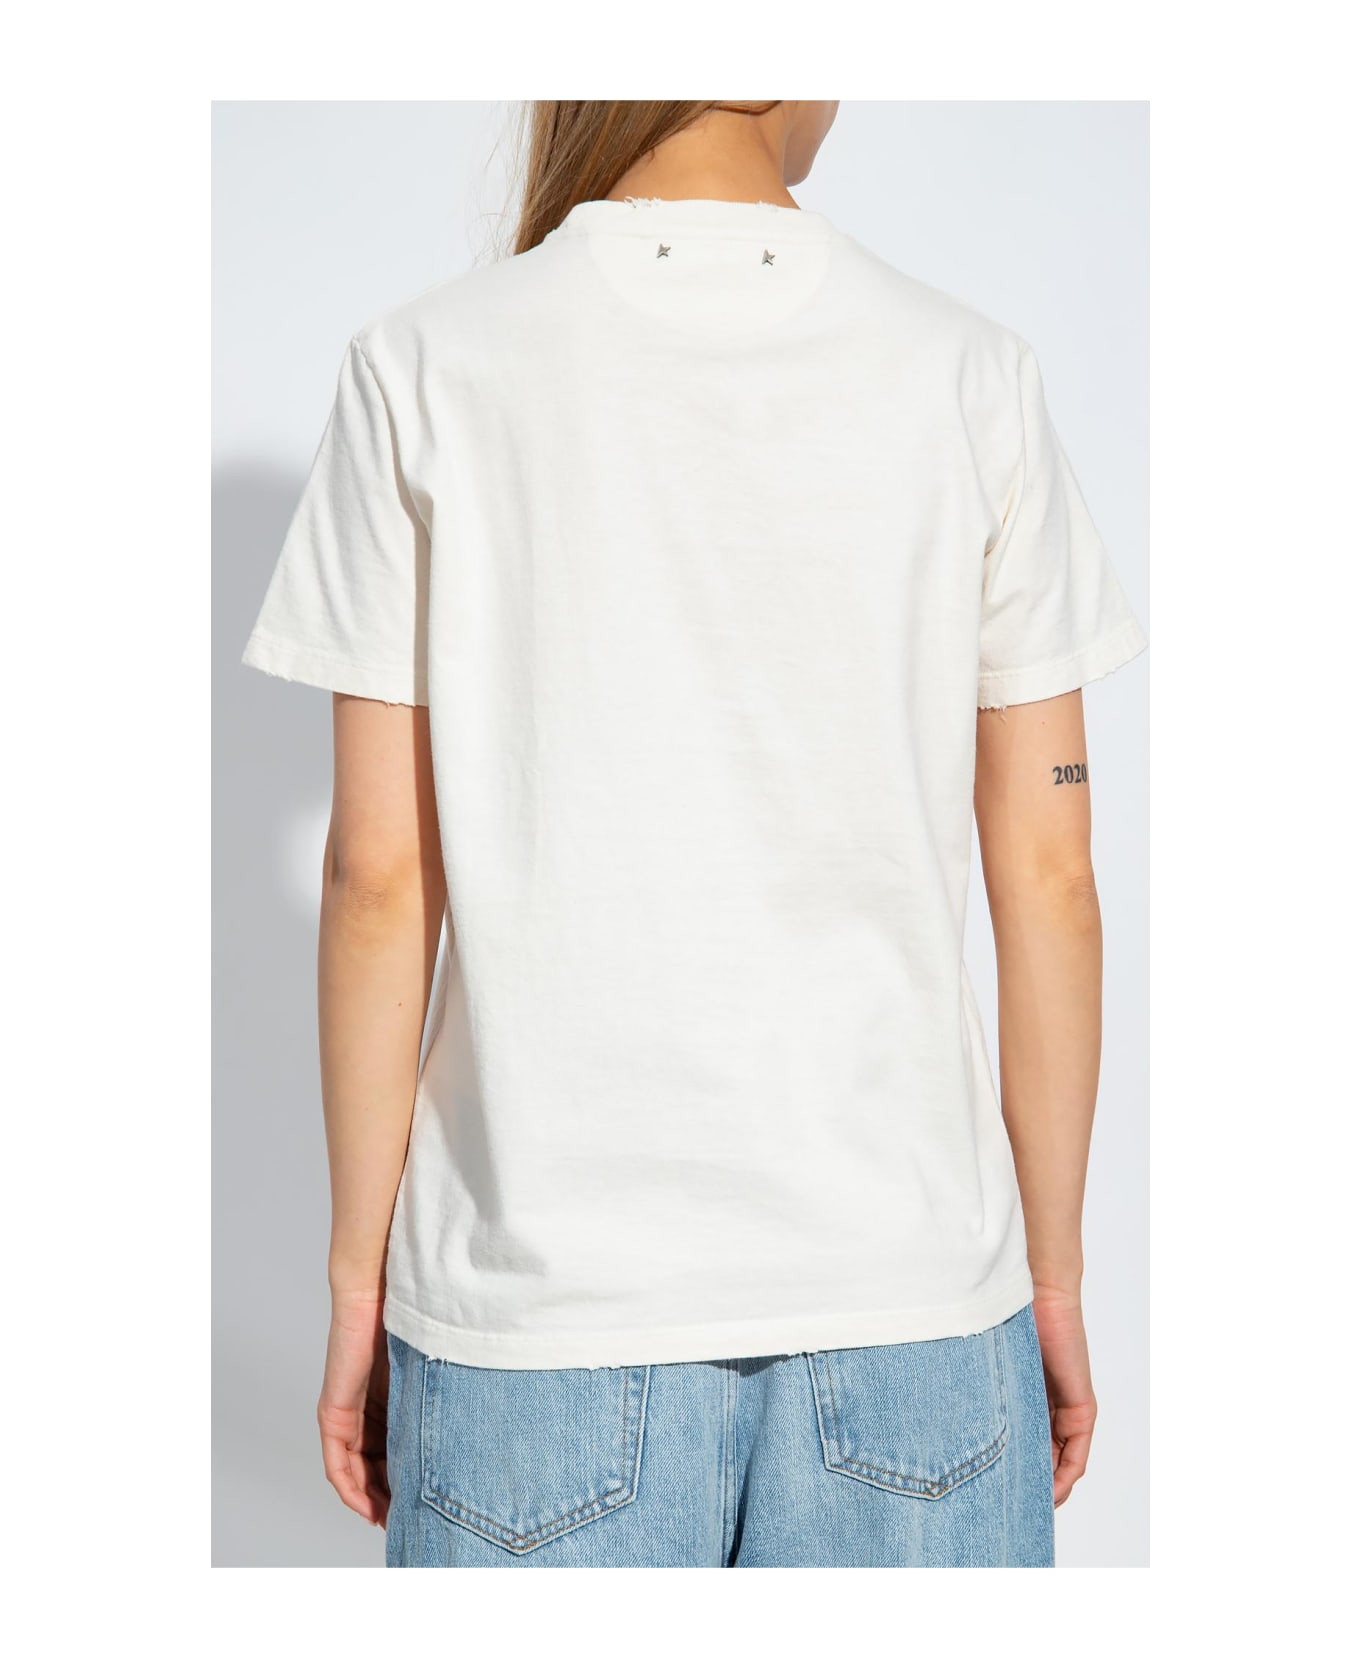 Golden Goose Printed T-shirt - HERITAGE WHITE MALT BALL (White) Tシャツ